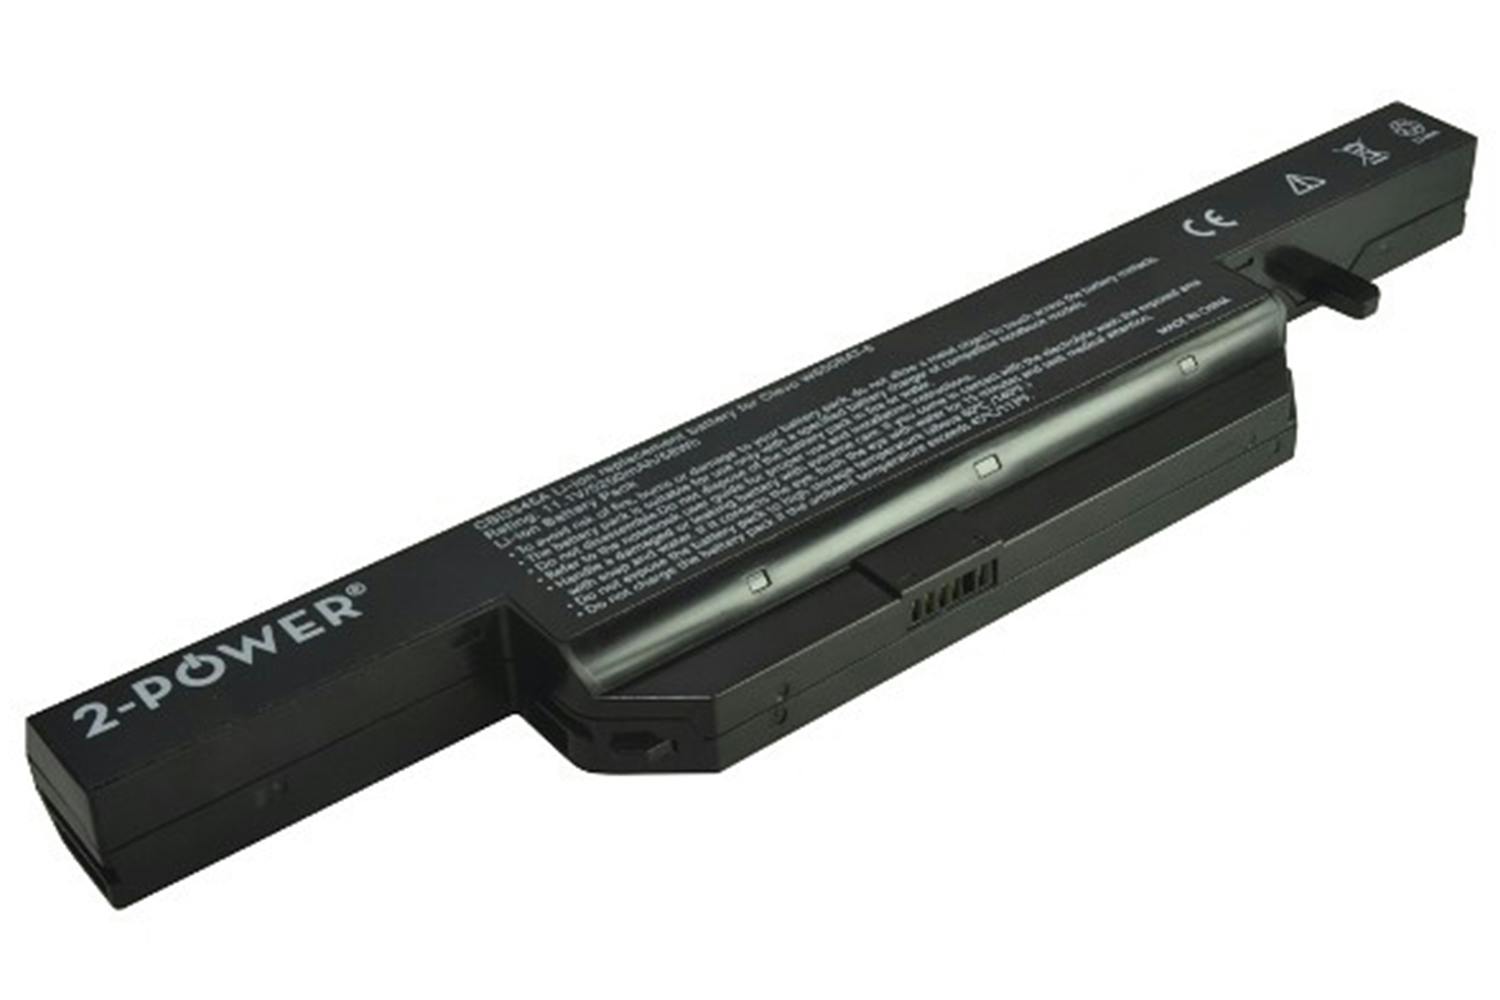 2-Power Main Battery Pack 11.1V 5200mAh